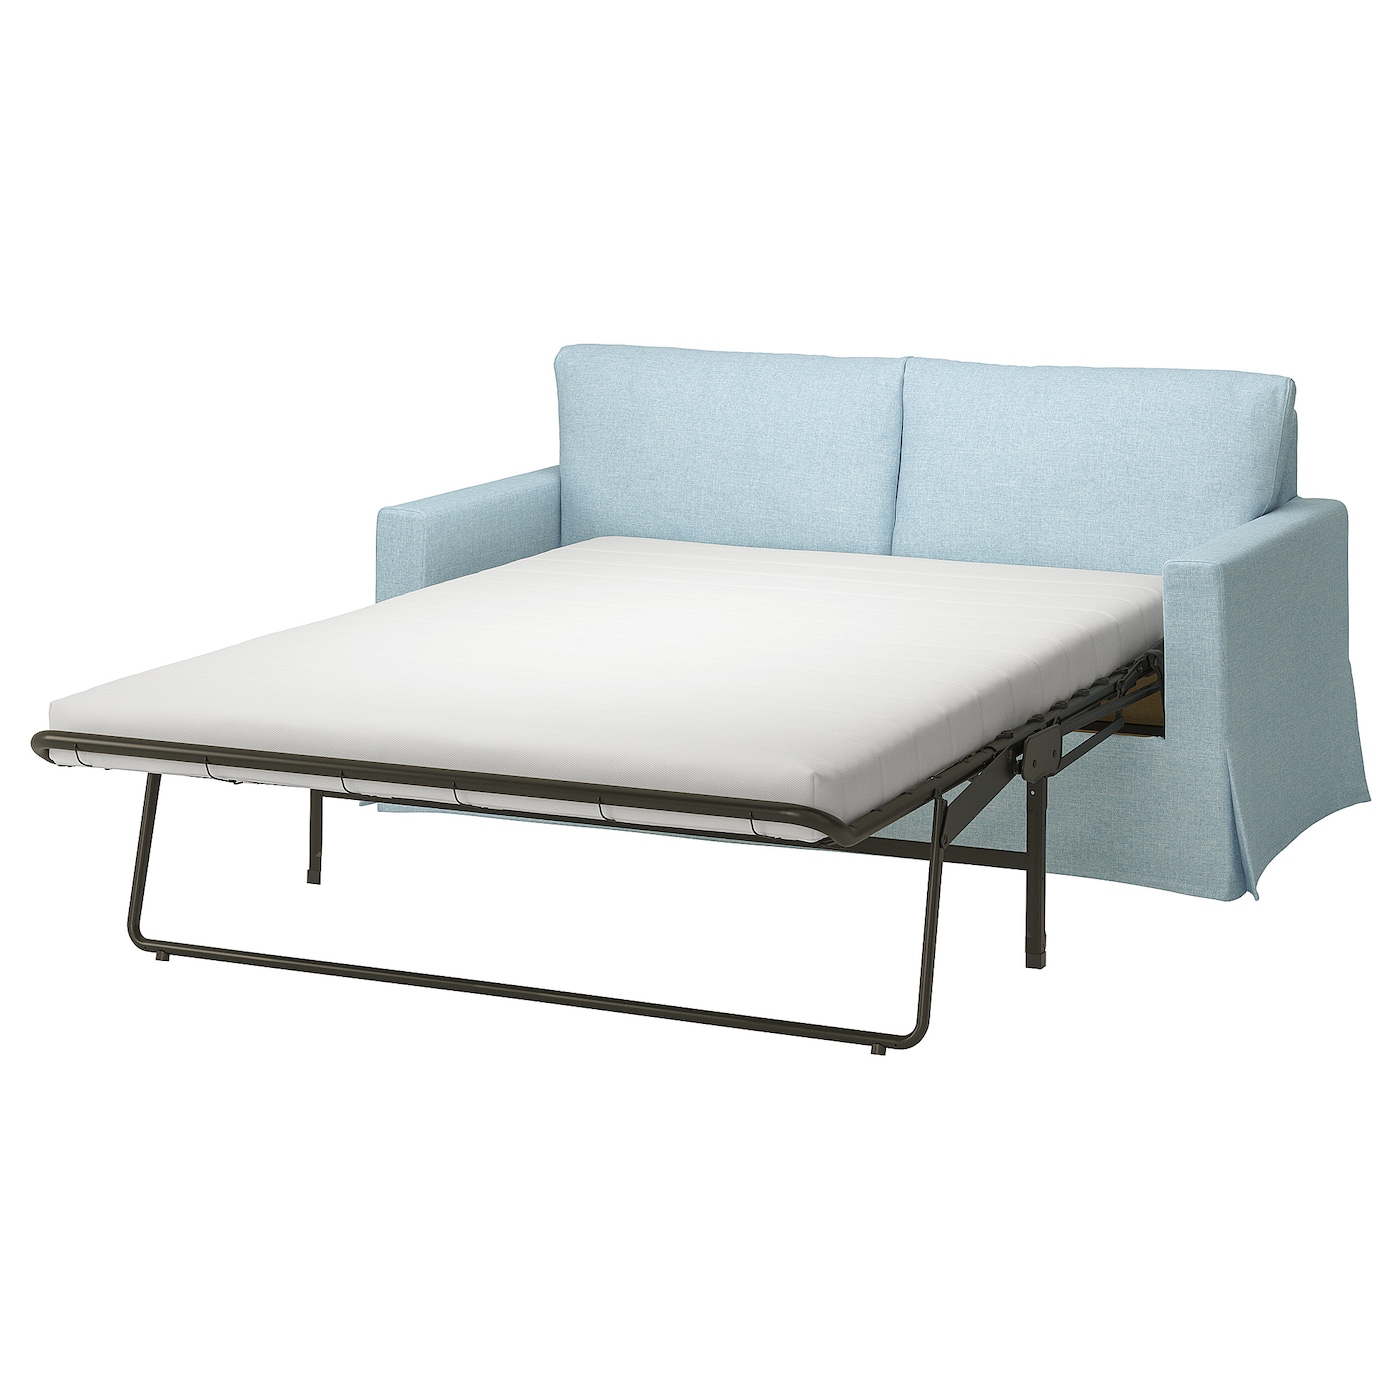 Чехол диван-кровать  - HYLTARP IKEA/ ХУЛТАРП ИКЕА, голубой